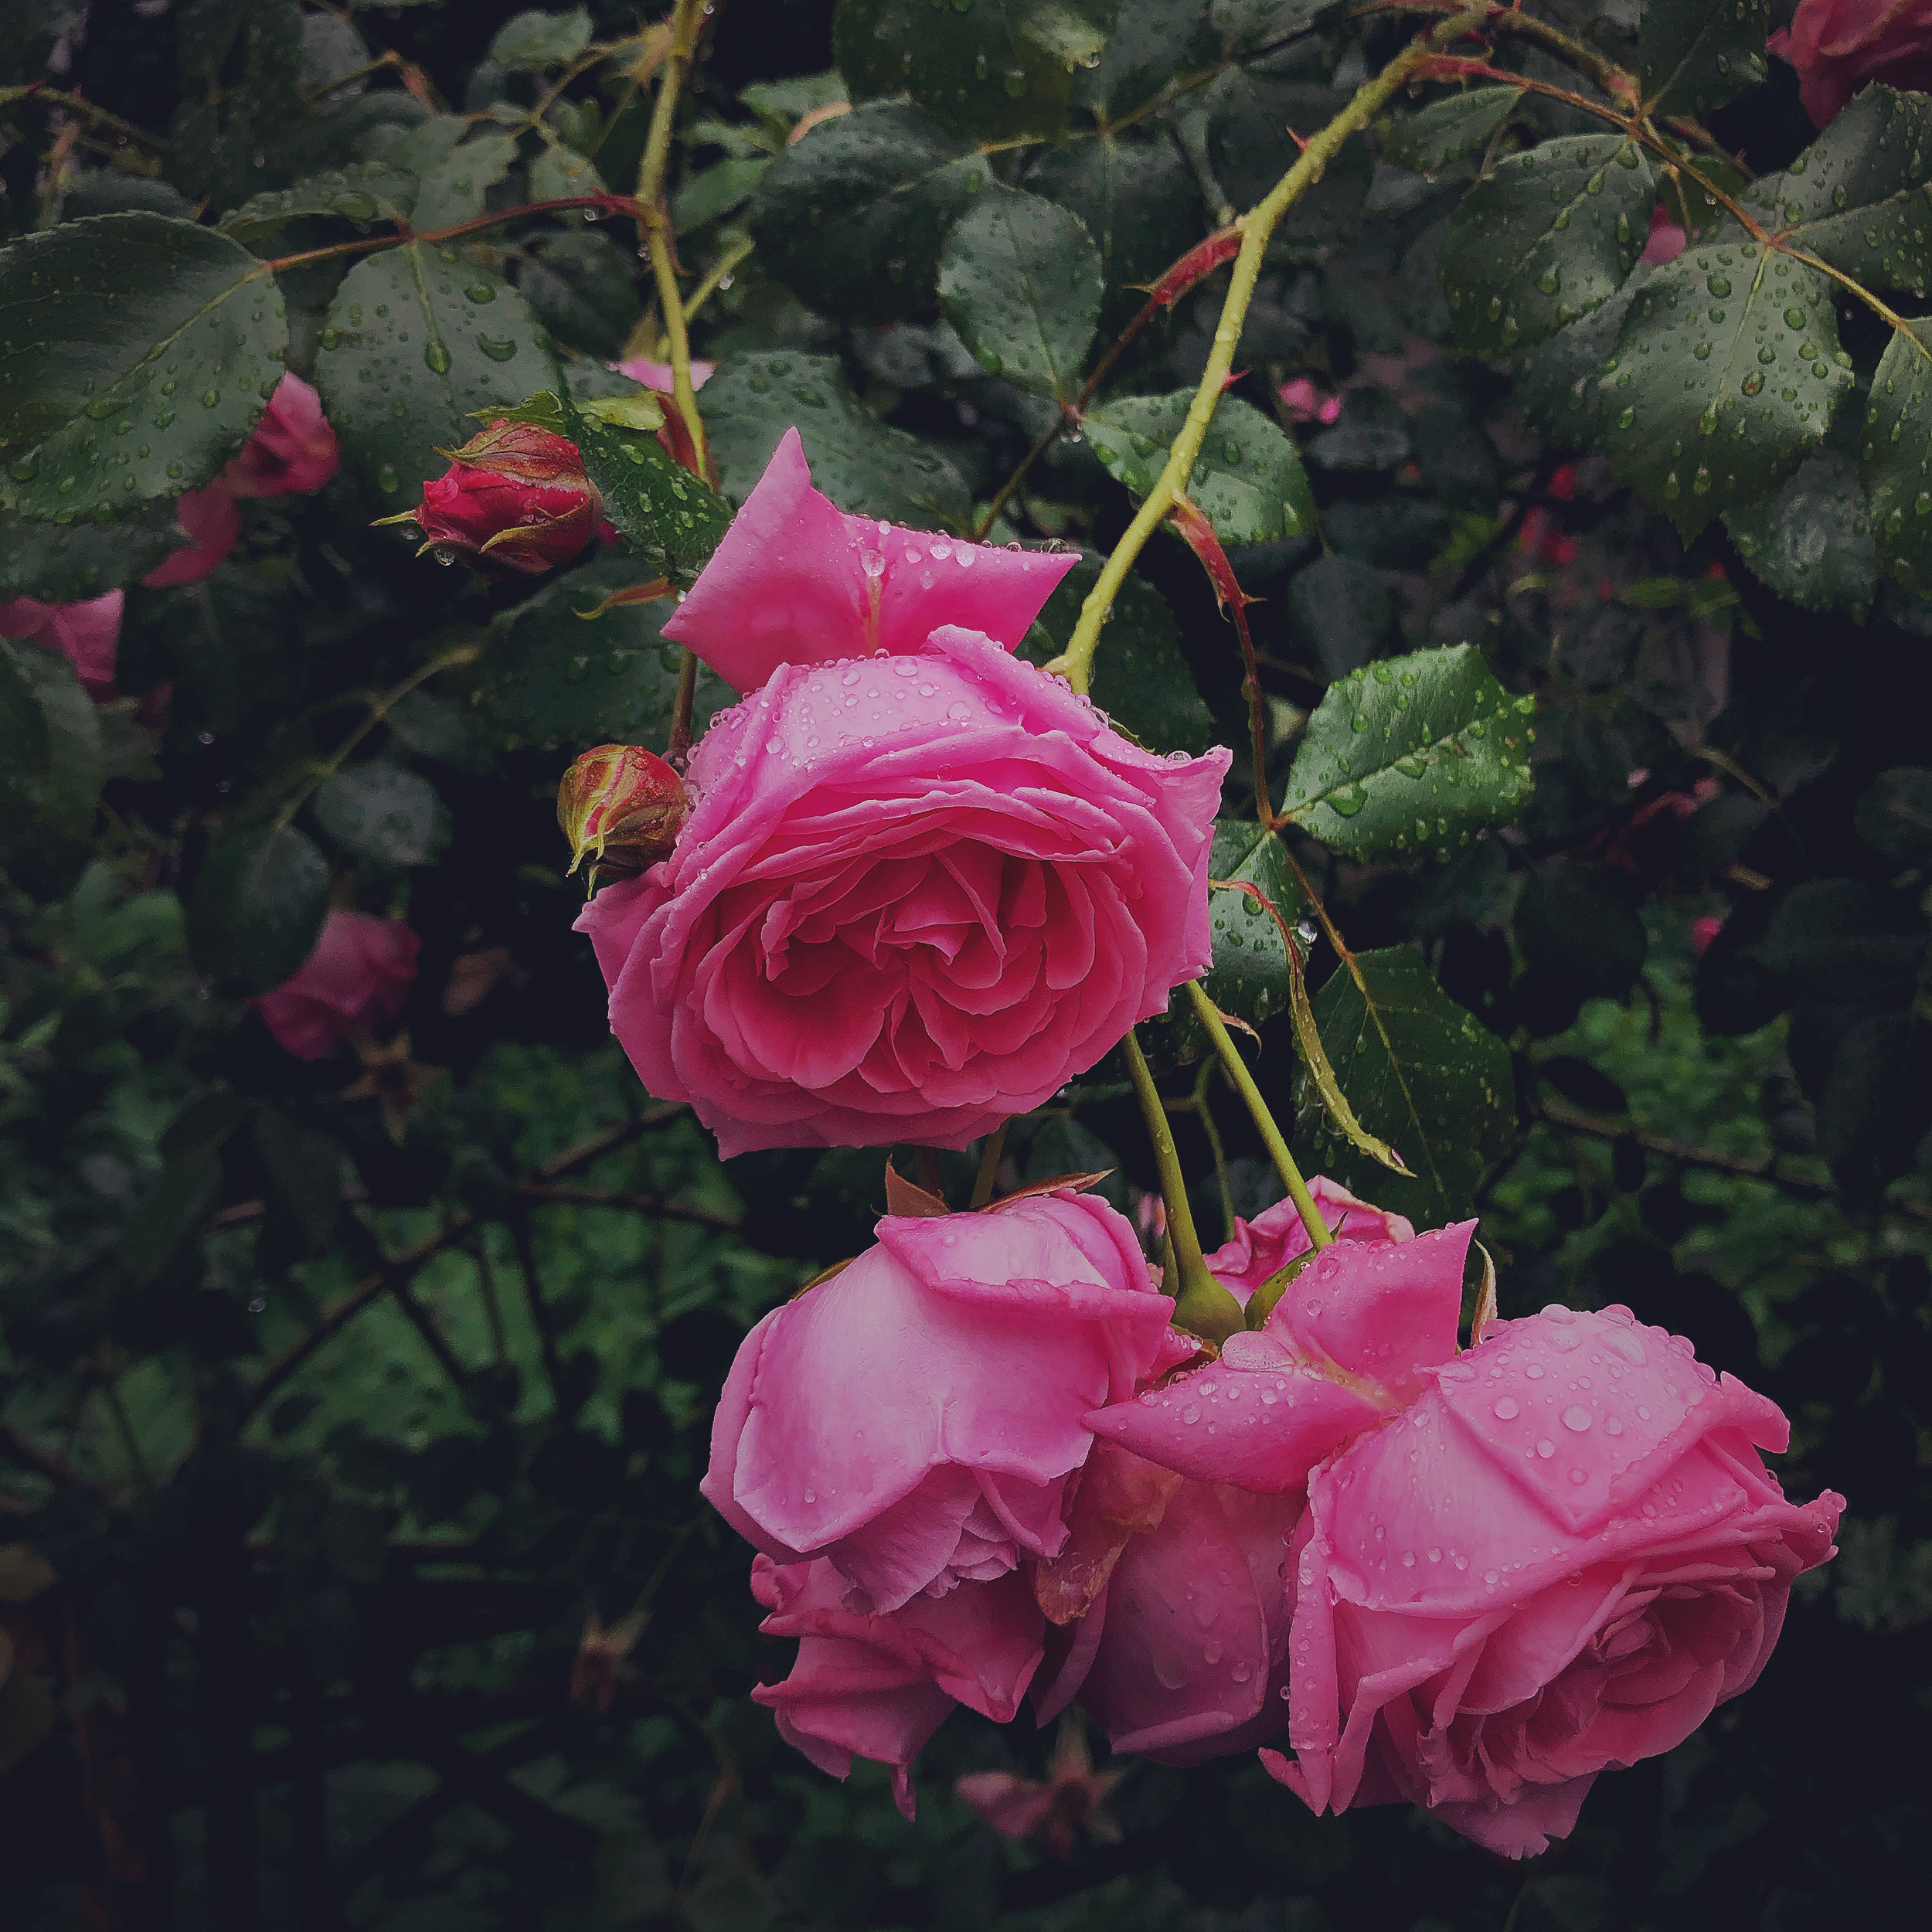 Wet roses